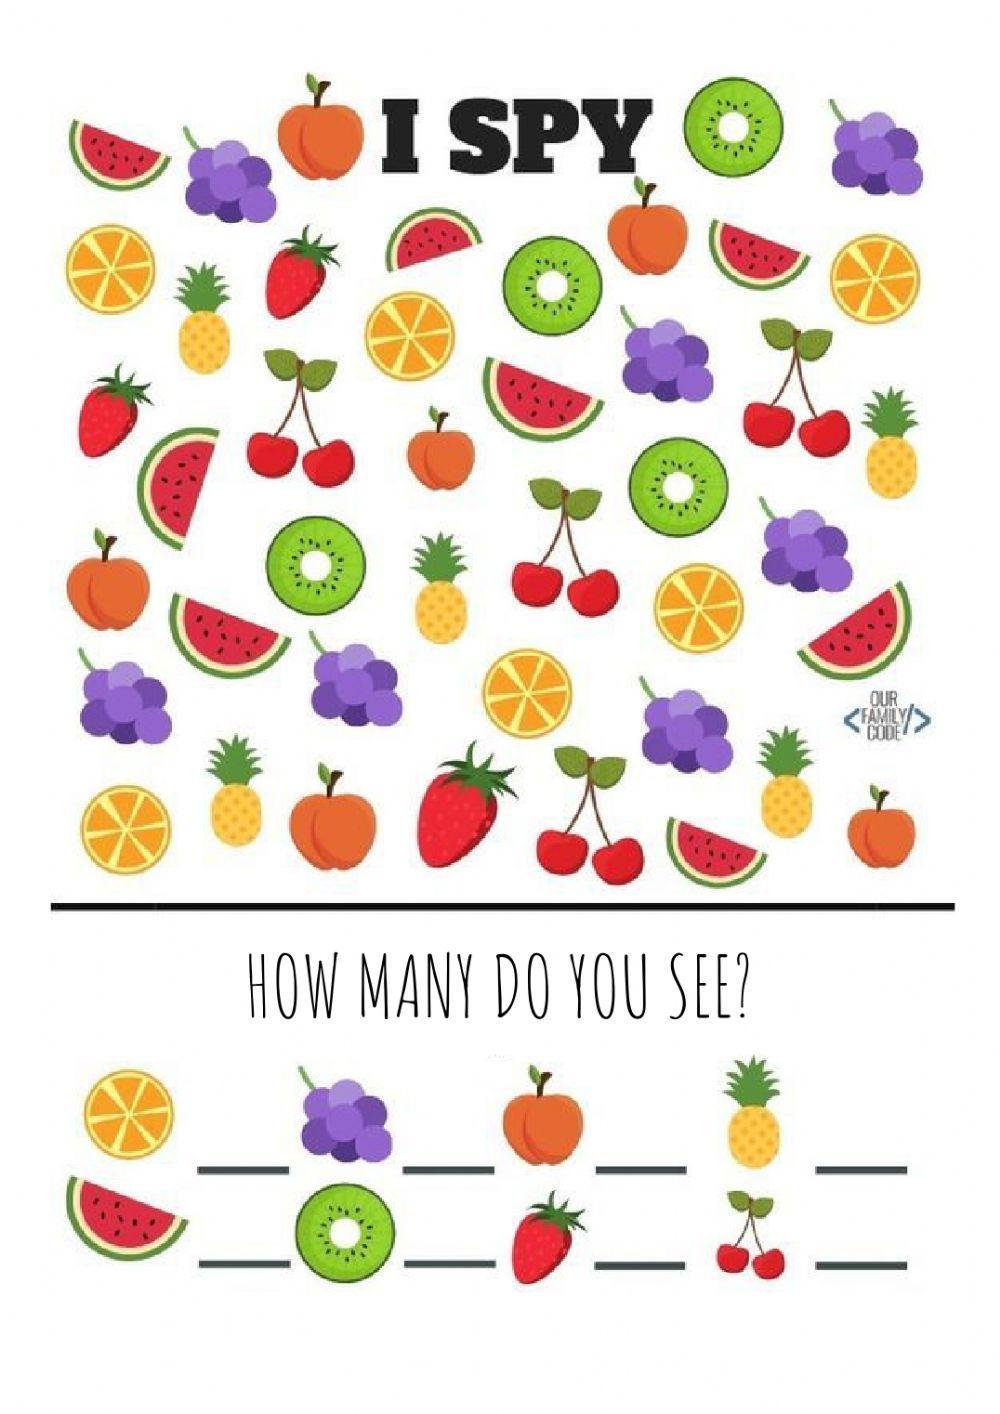 I spy fruits